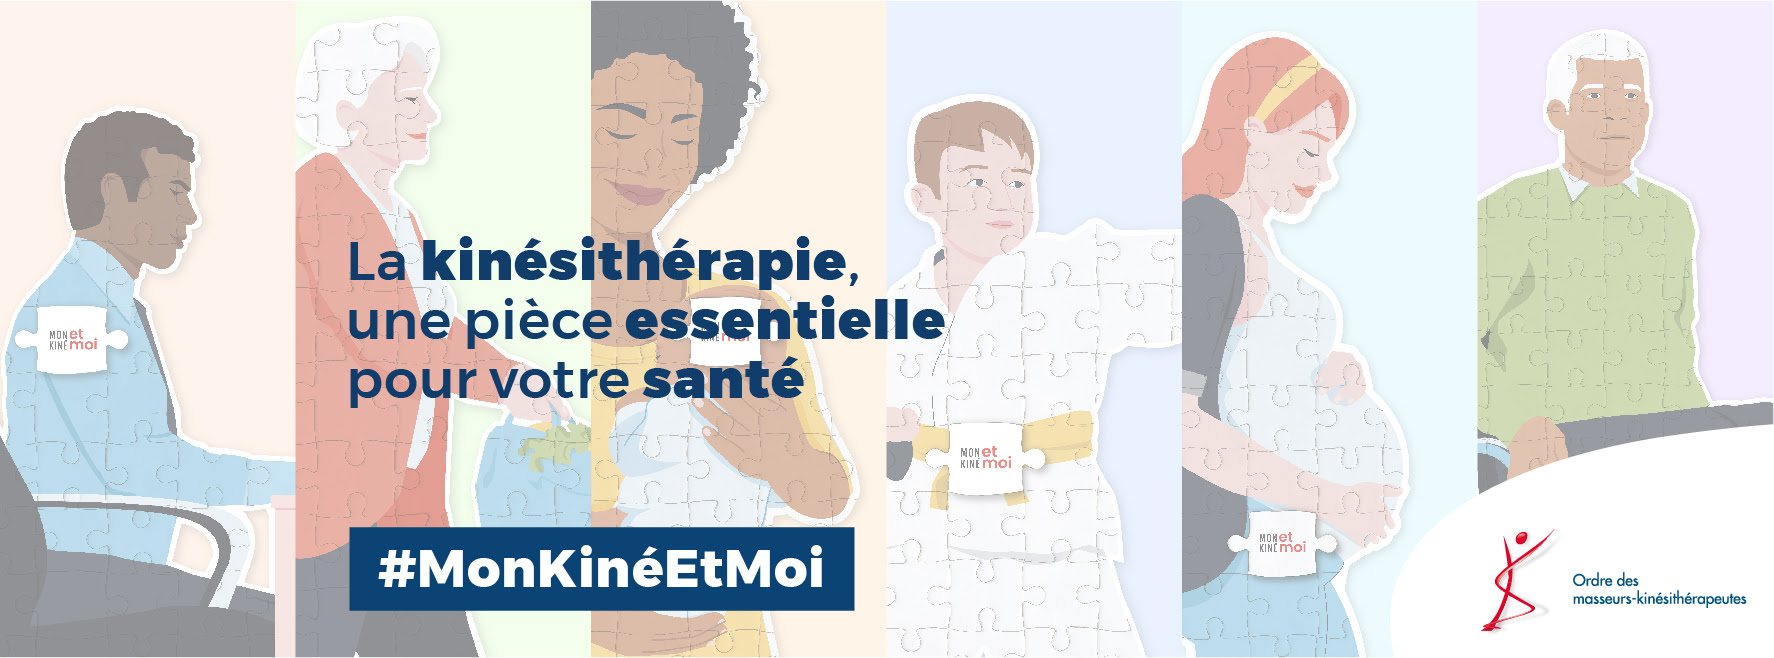 Campagne Mon Kiné et Moi